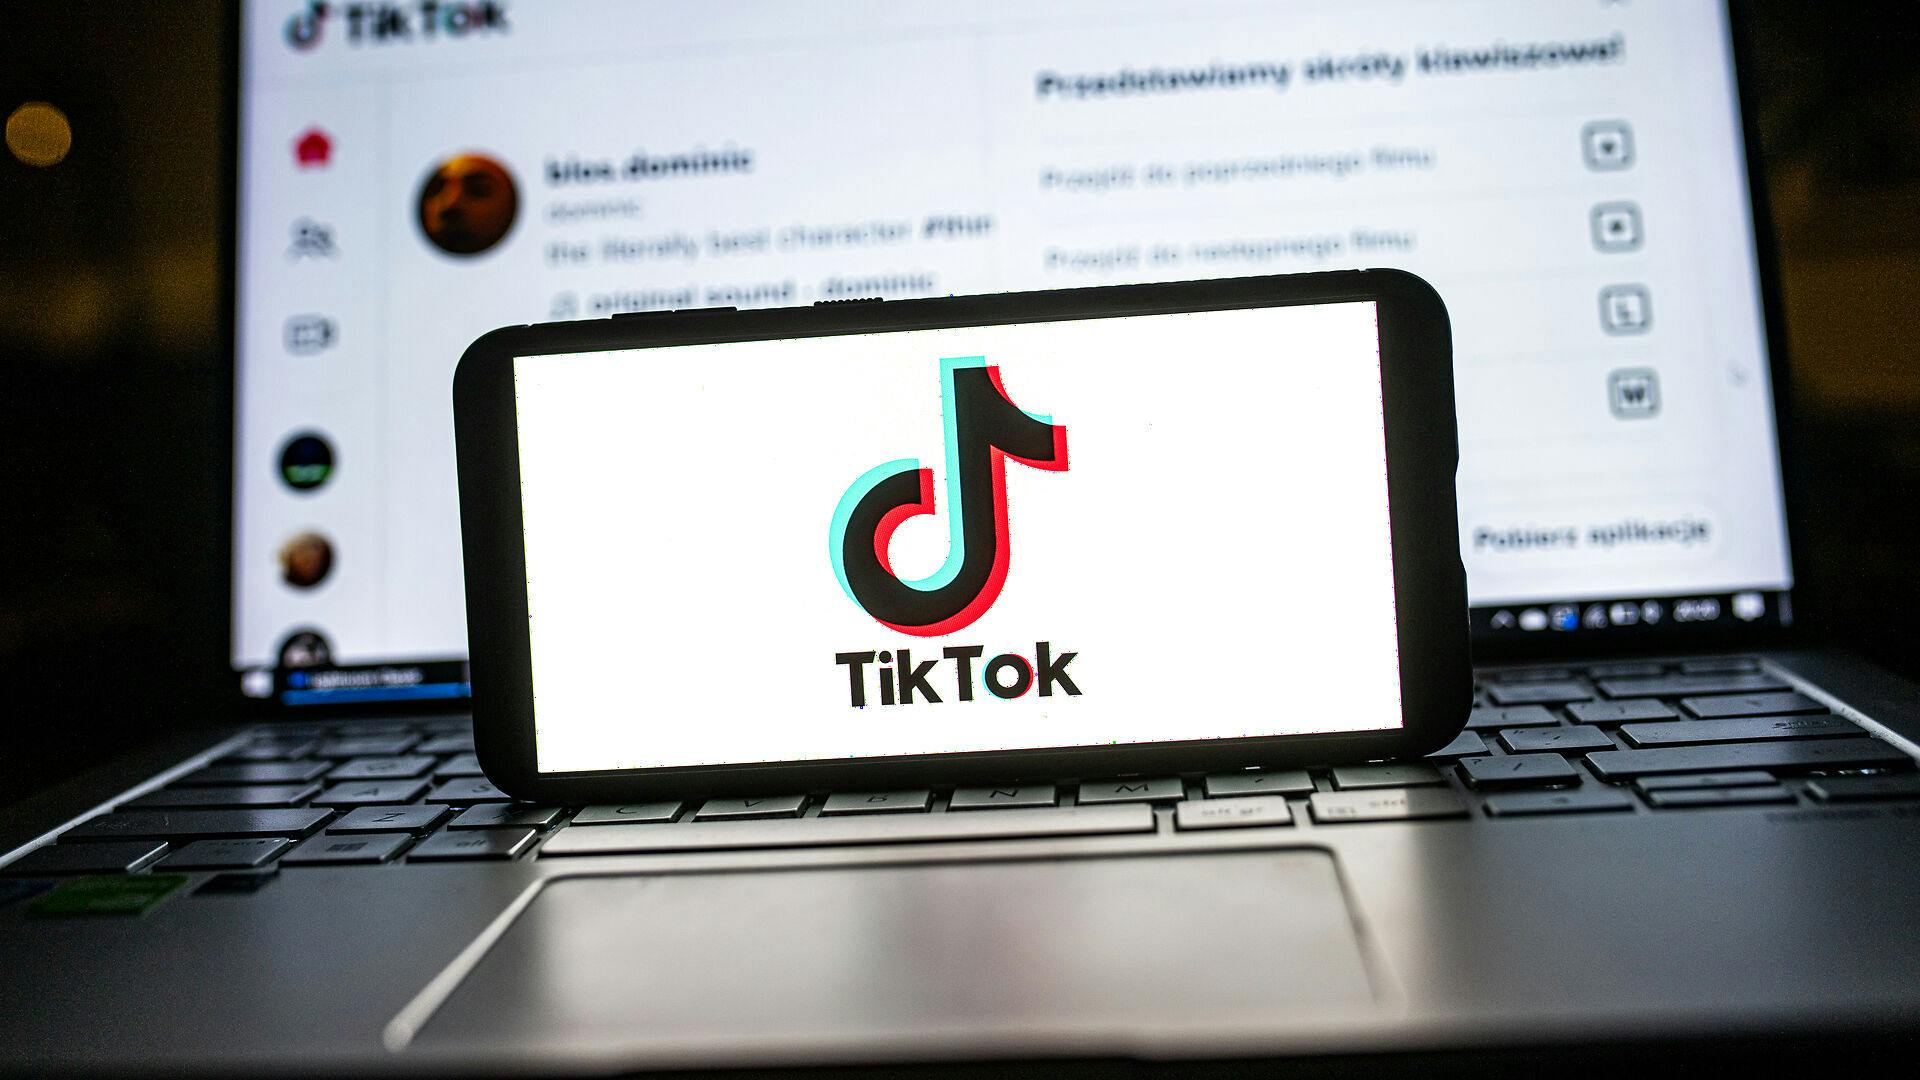 TikTok er kinesisk ejet og kom ud af Kina til resten af verden i 2017. Siden er det gået hen og blevet et af verdens absolut største sociale medier.